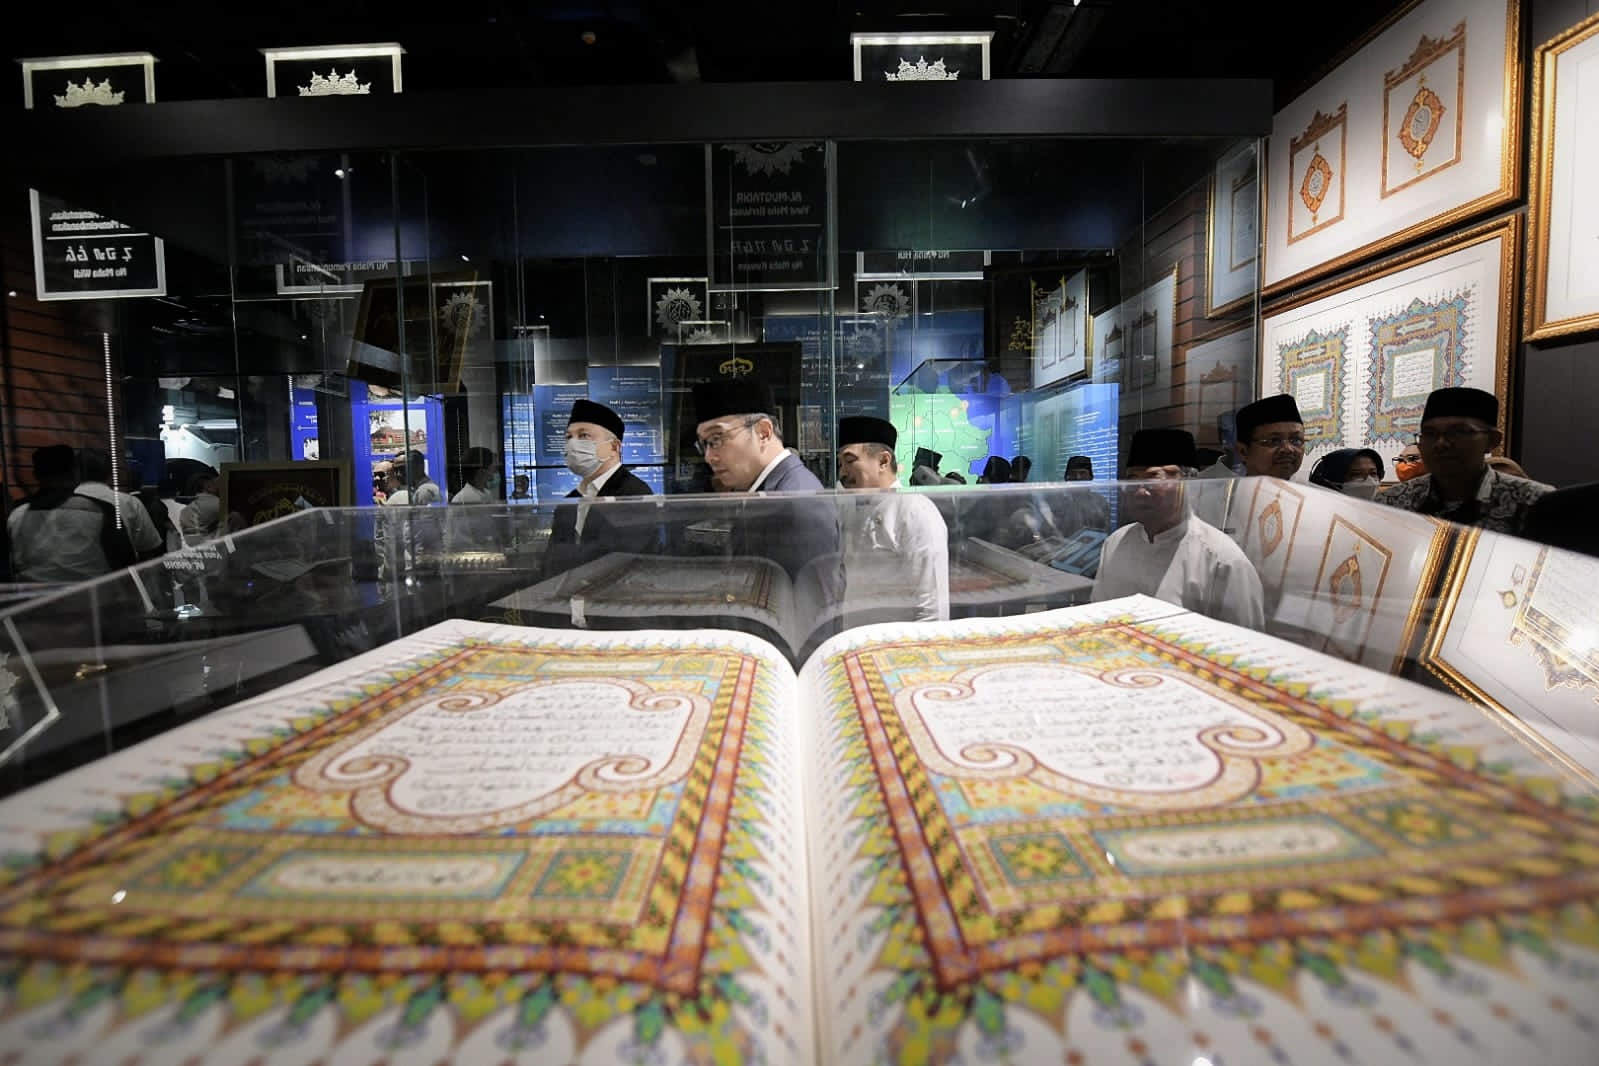 Ingin Berkunjung ke Galeri Rasulullah di Masjid Al Jabbar, Harus Mendaftar Online